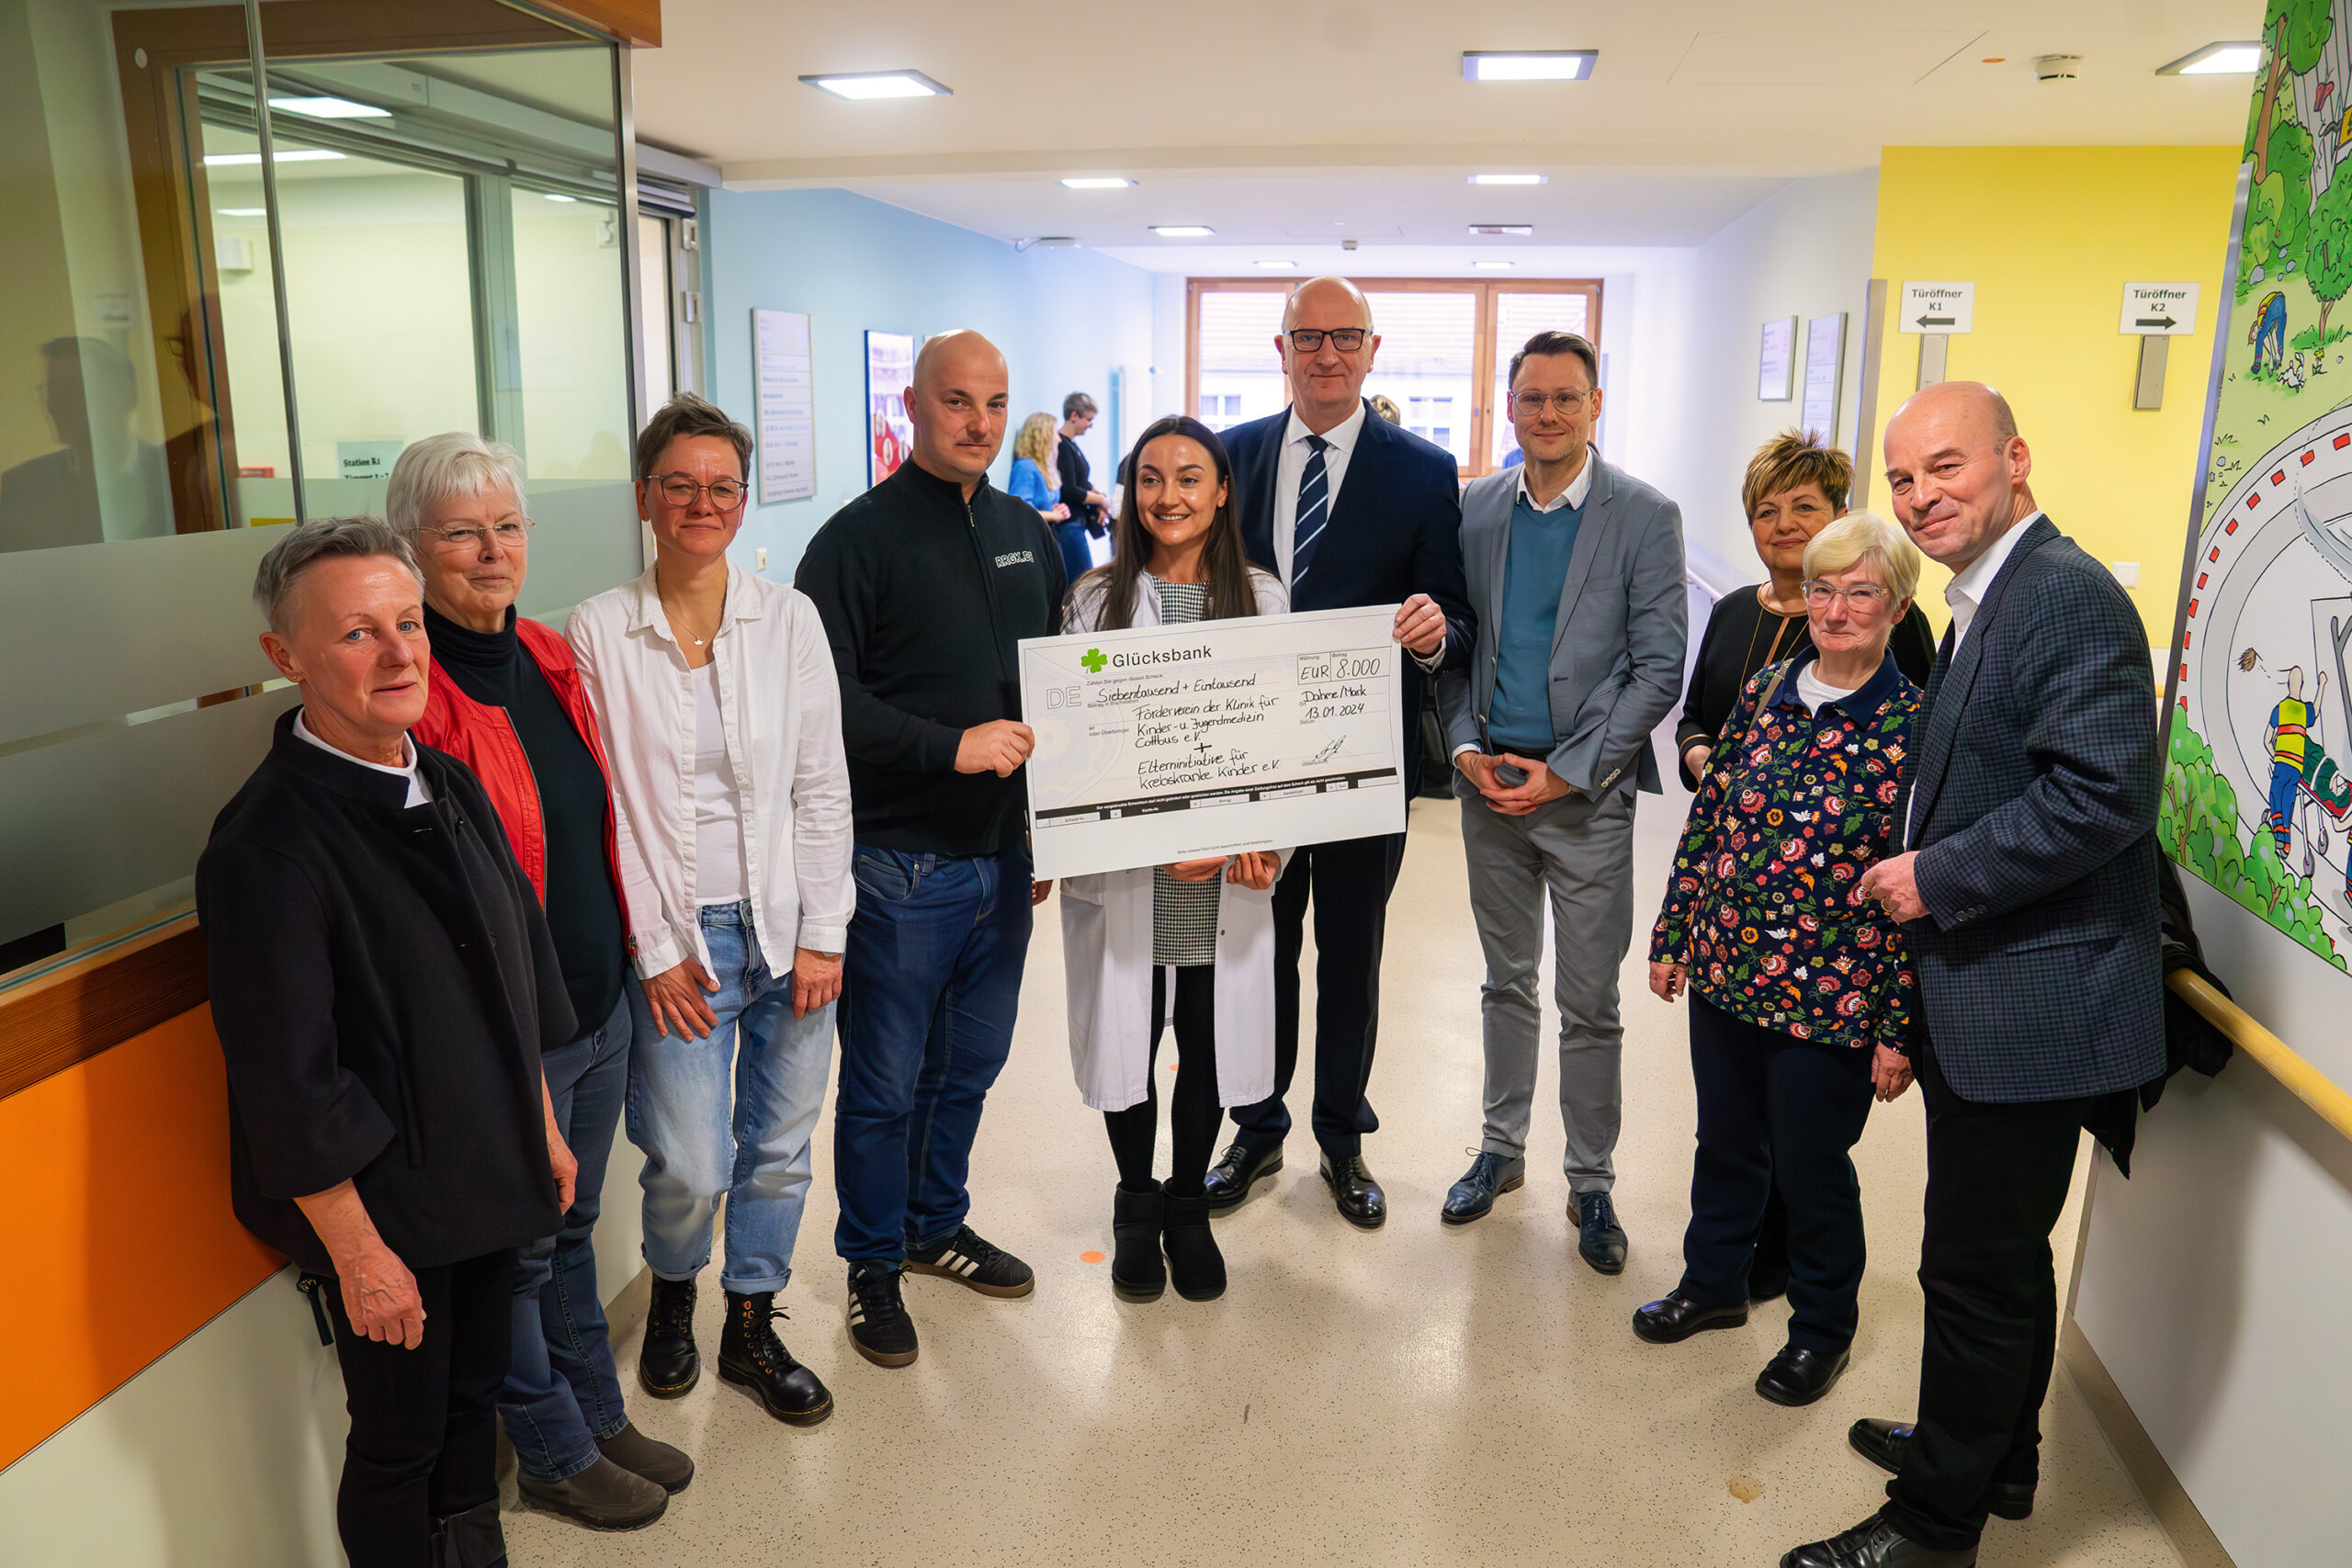 Auf dem Foto sind Mitarbeitende der CTK-Kinderklinik mit einem Spendenscheck zu sehen. Auch der Verein "Rock n Roll gegen Krebs" ist vertreten. Ministerpräsident Dietmar Woidke ist ebenfalls abgebildet.